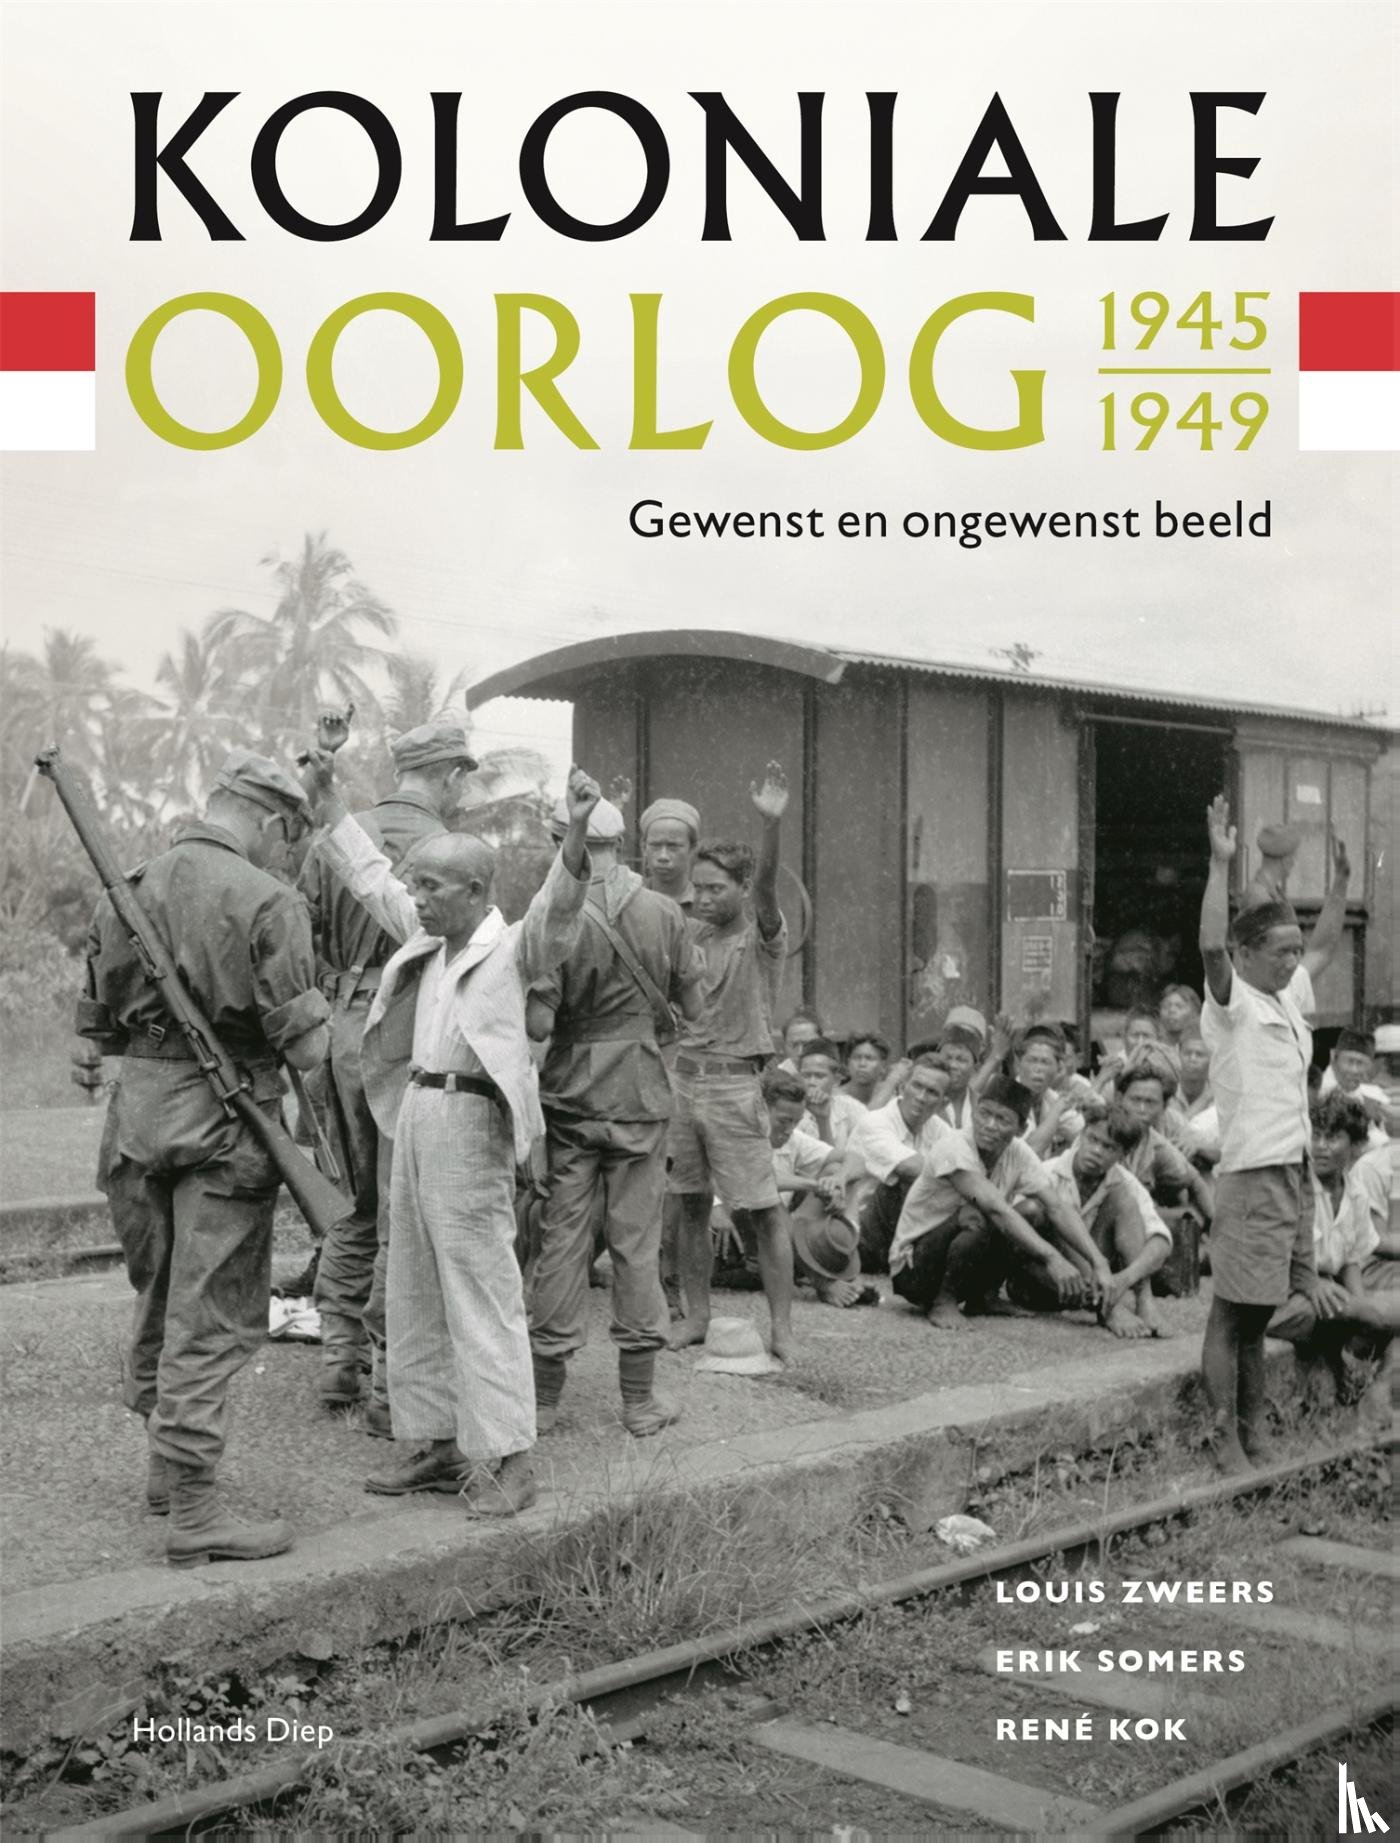 Kok, René, Somers, Erik, Zweers, Louis - Koloniale oorlog 1945-1949